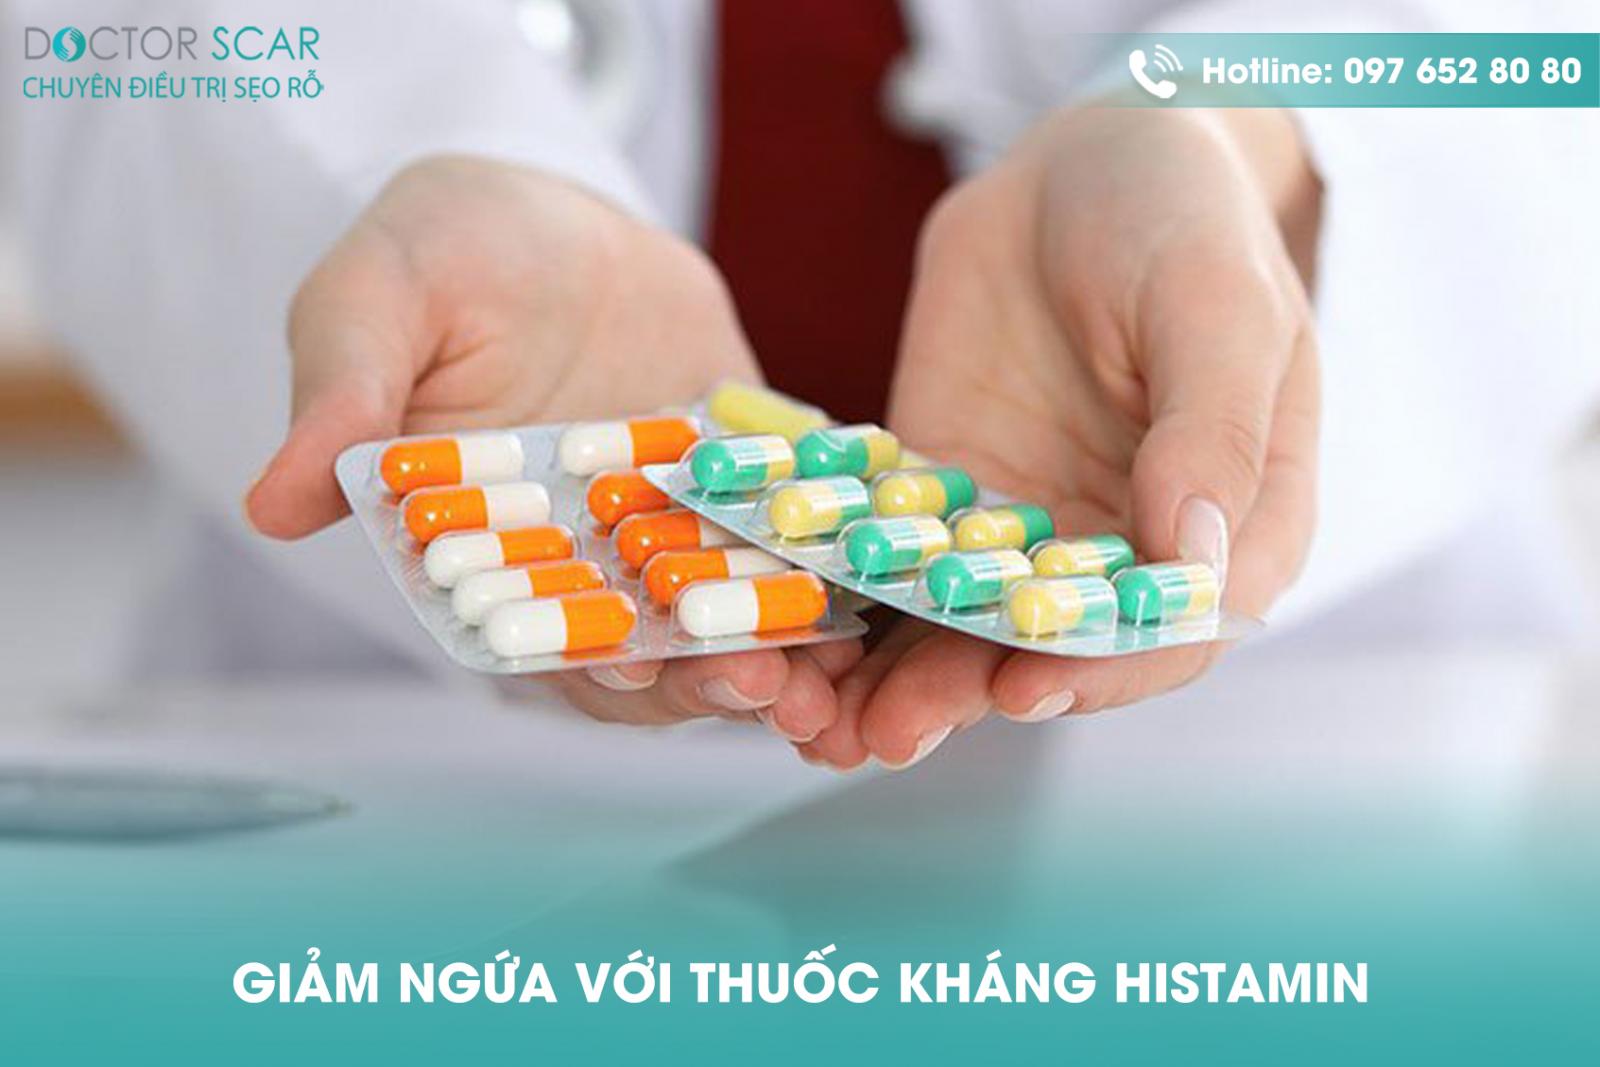 Giảm ngứa với thuốc kháng histamin